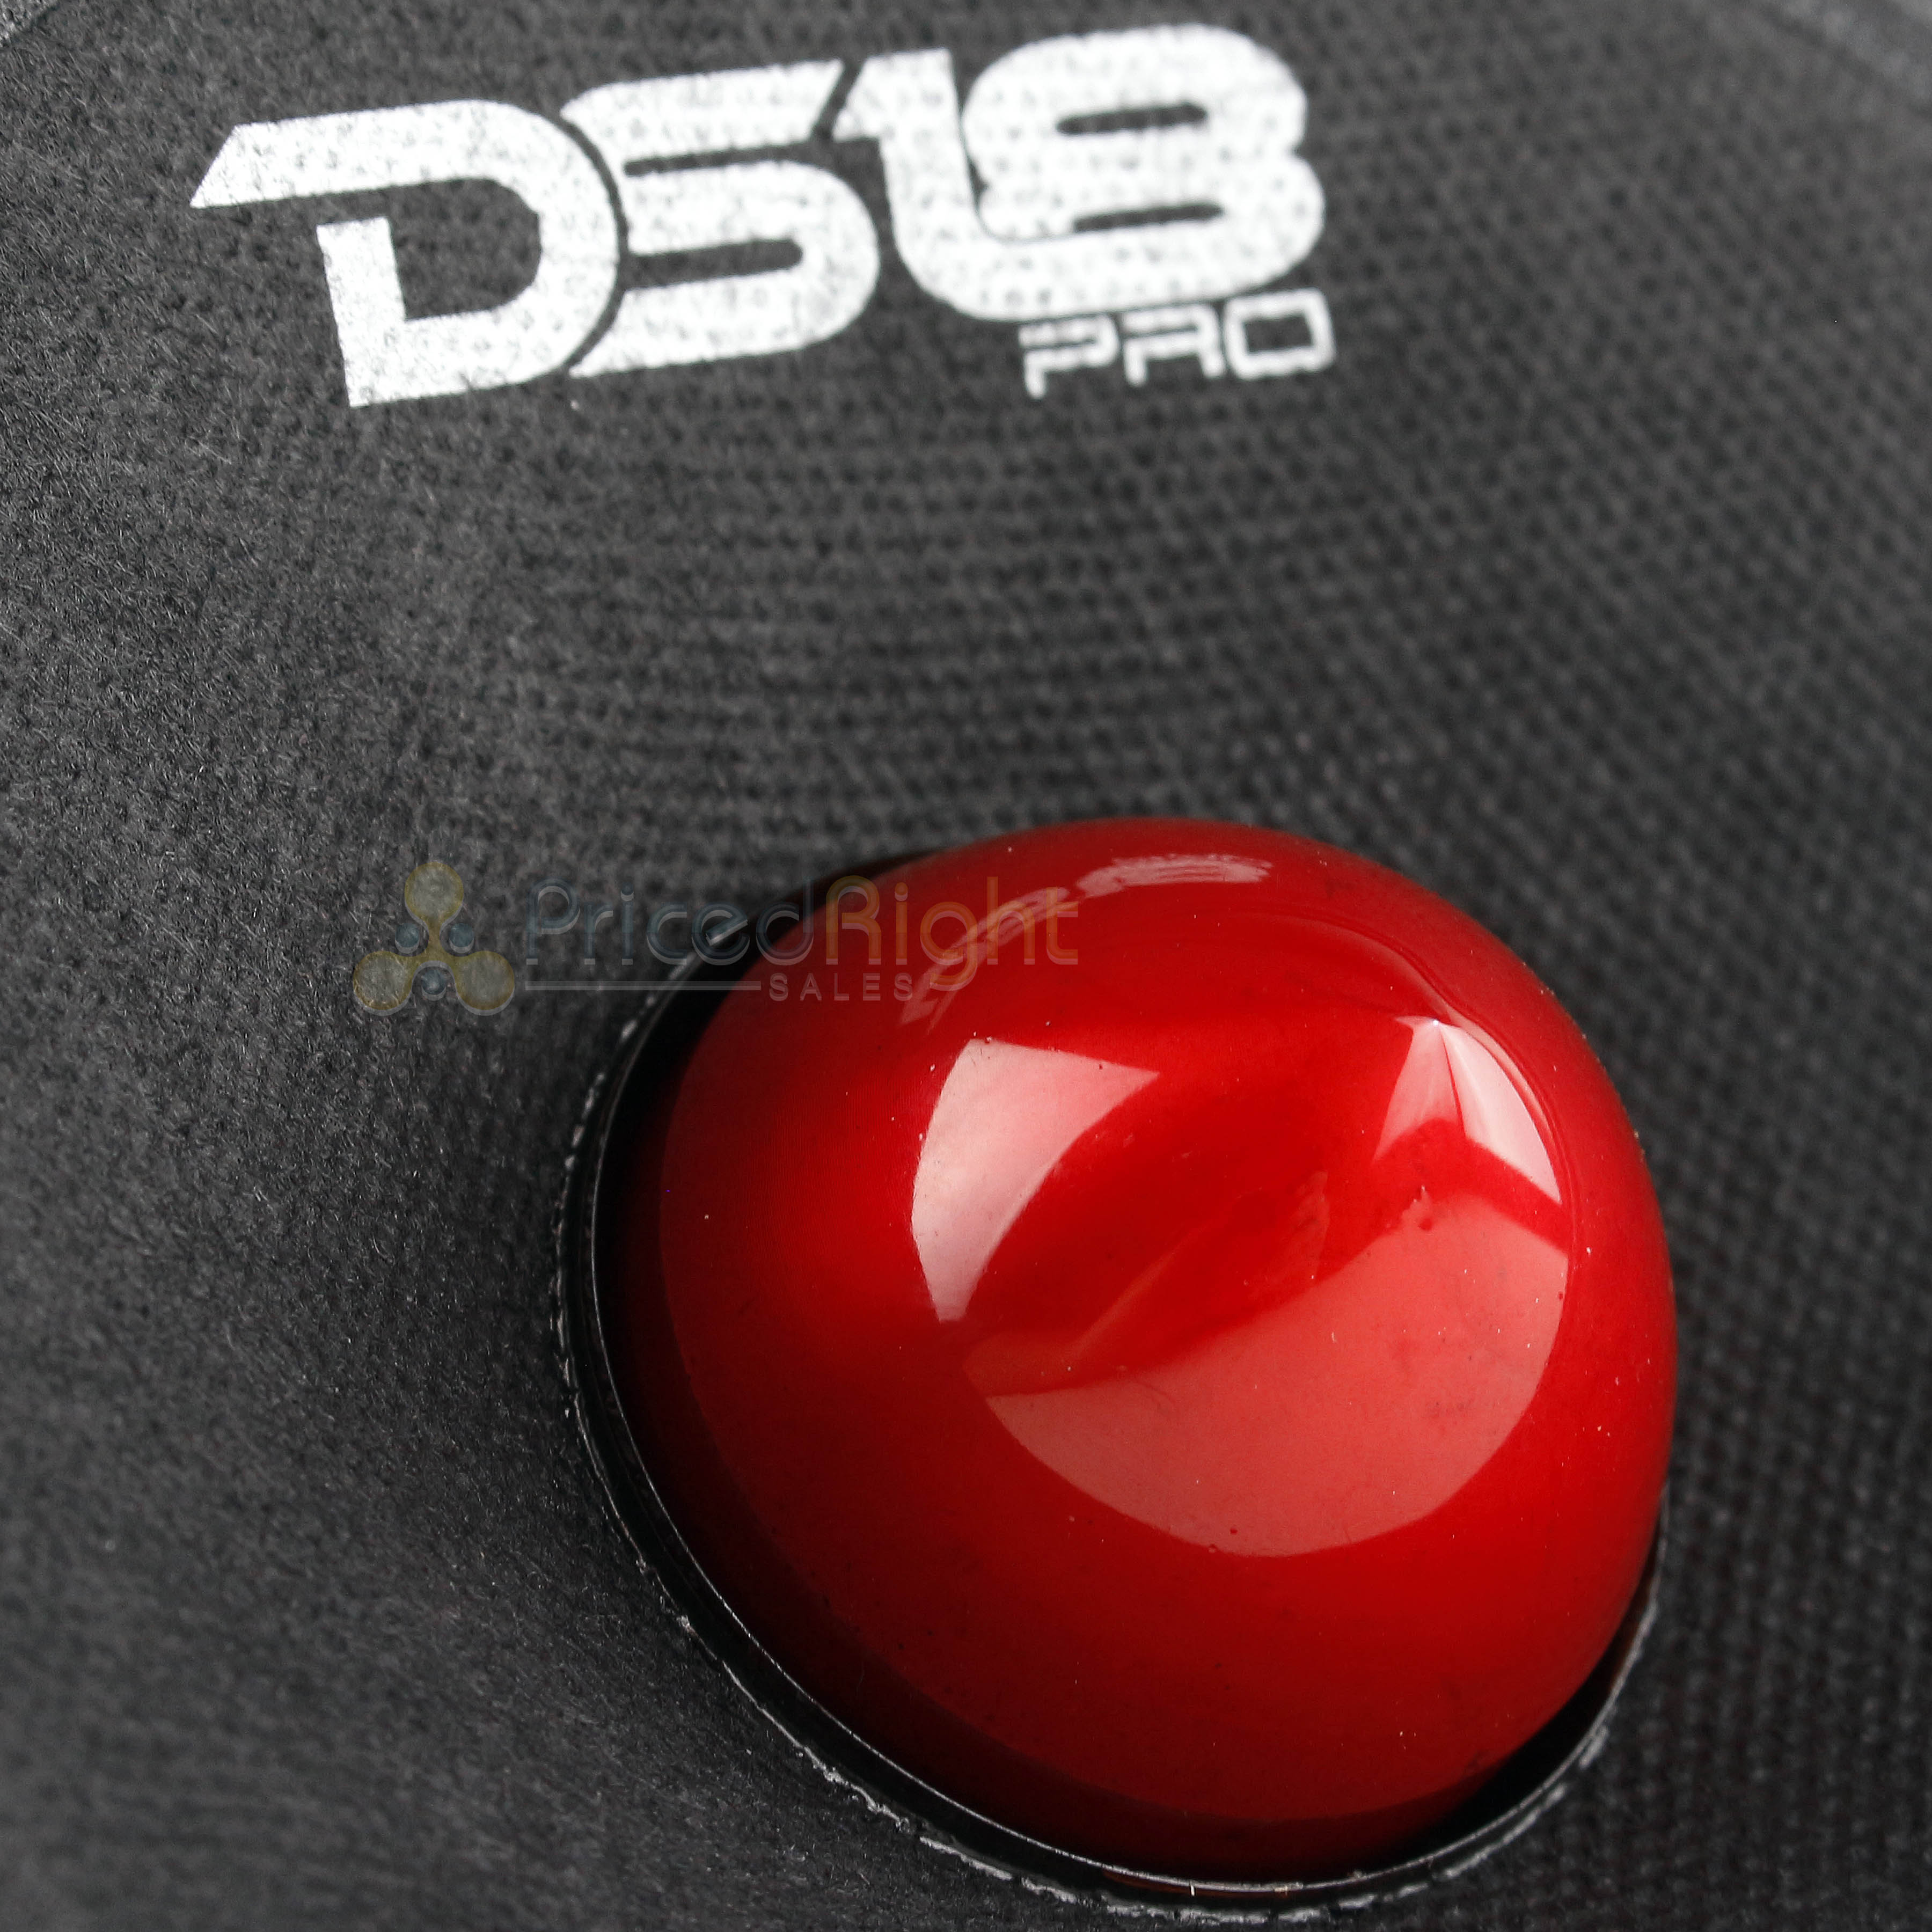 DS18 PRO-GM6B 6.5" Midrange Bullet Speaker 480 Watts Max Power 8 Ohm Loudspeaker